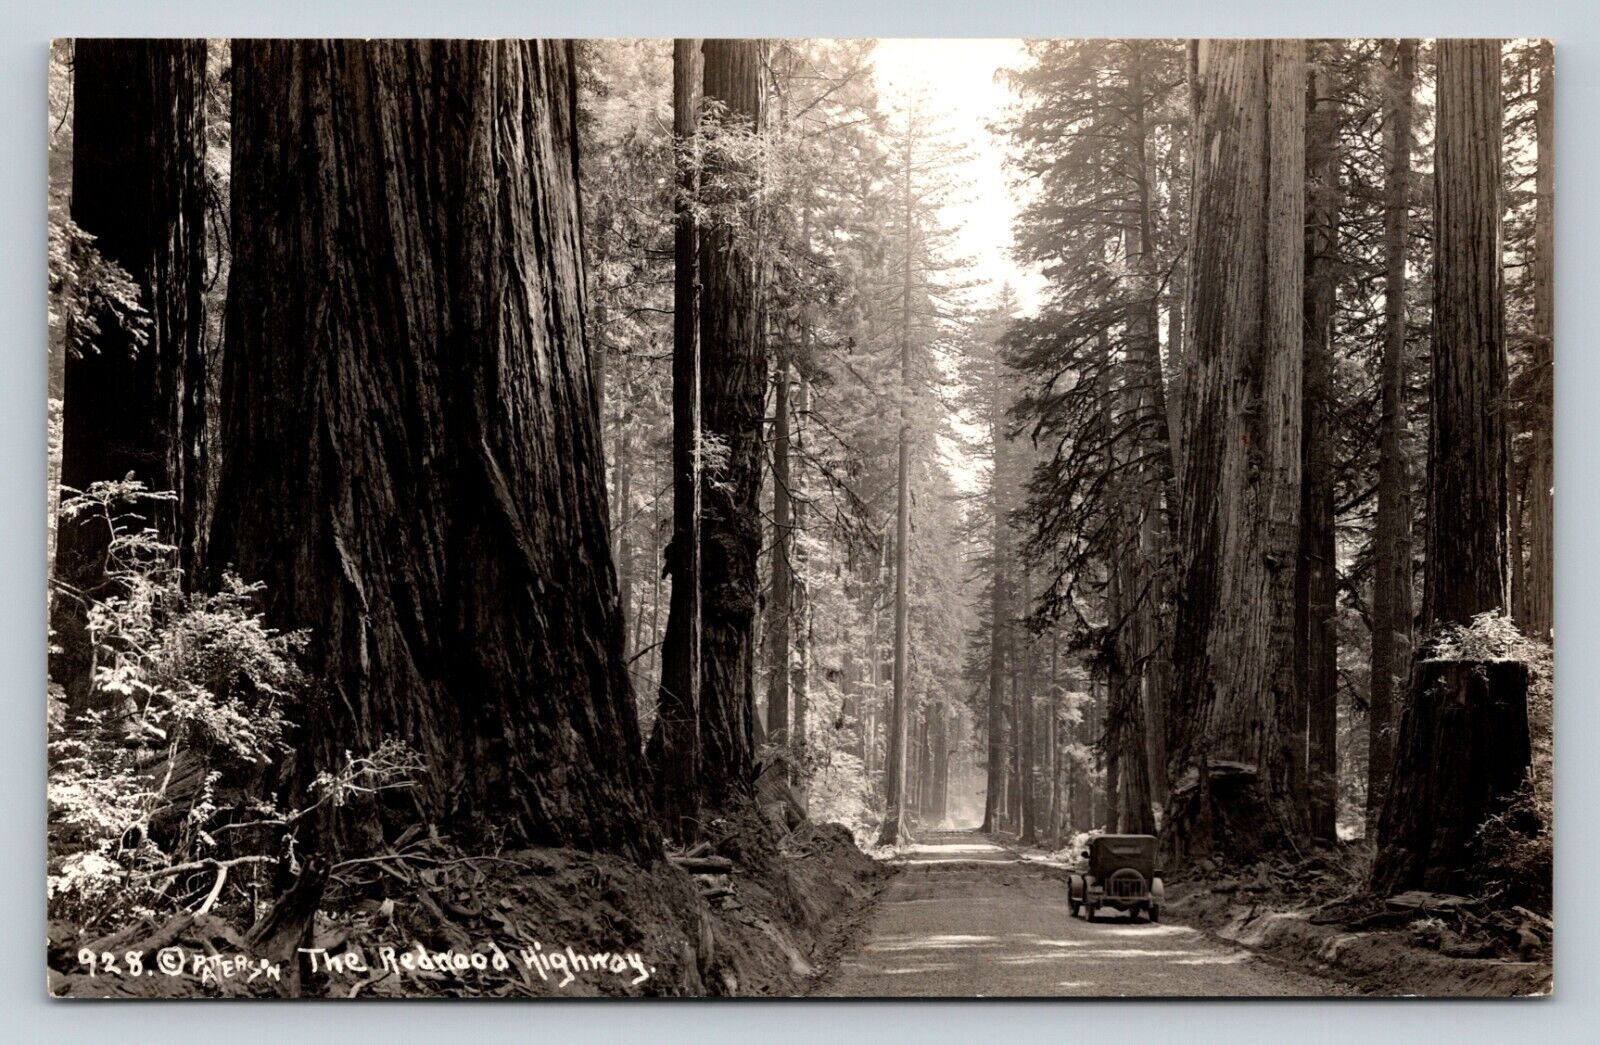 RPPC Redwood Highway Classic Vehicle Dirt Road VINTAGE Postcard EKKP 1904-1950